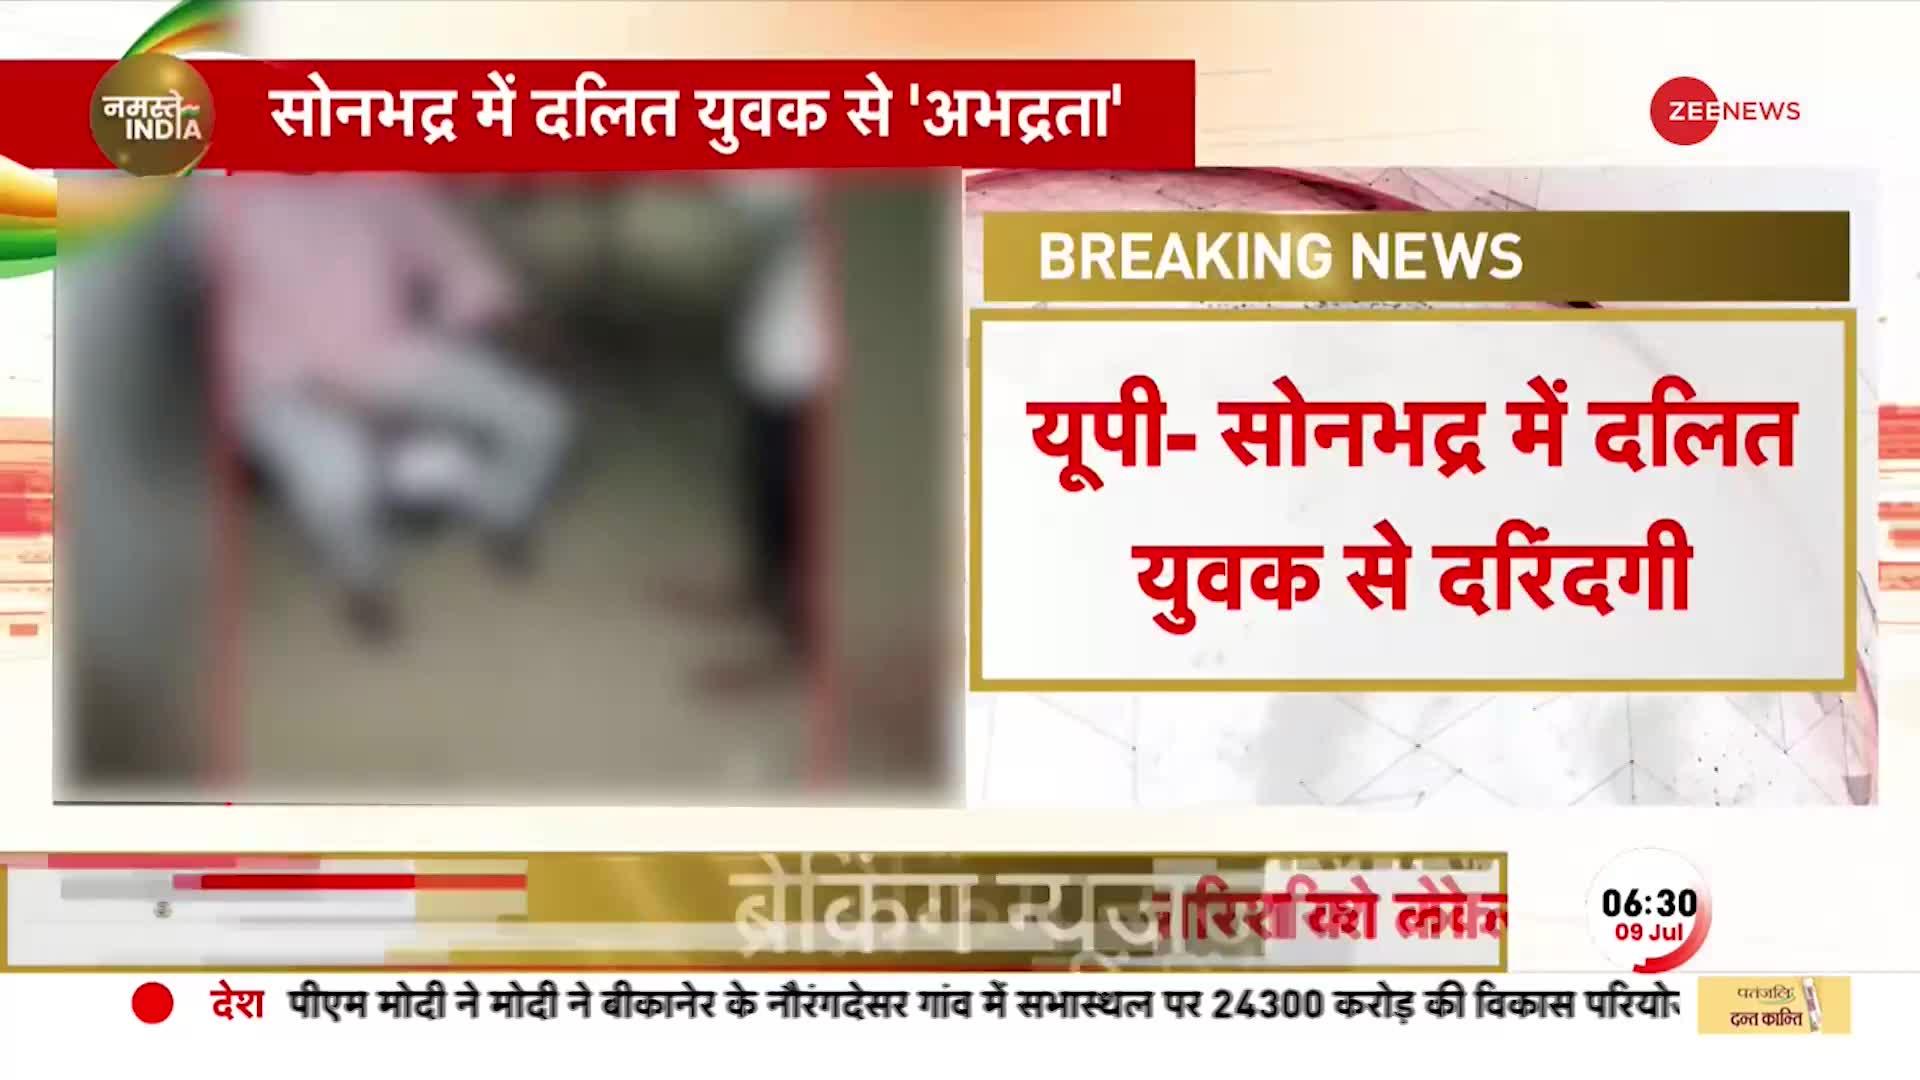 UP Viral Video: Sonbhadra में दलित युवक के साथ दरिंदगी, Line Man ने की पिटाई और चटवाई चप्पल